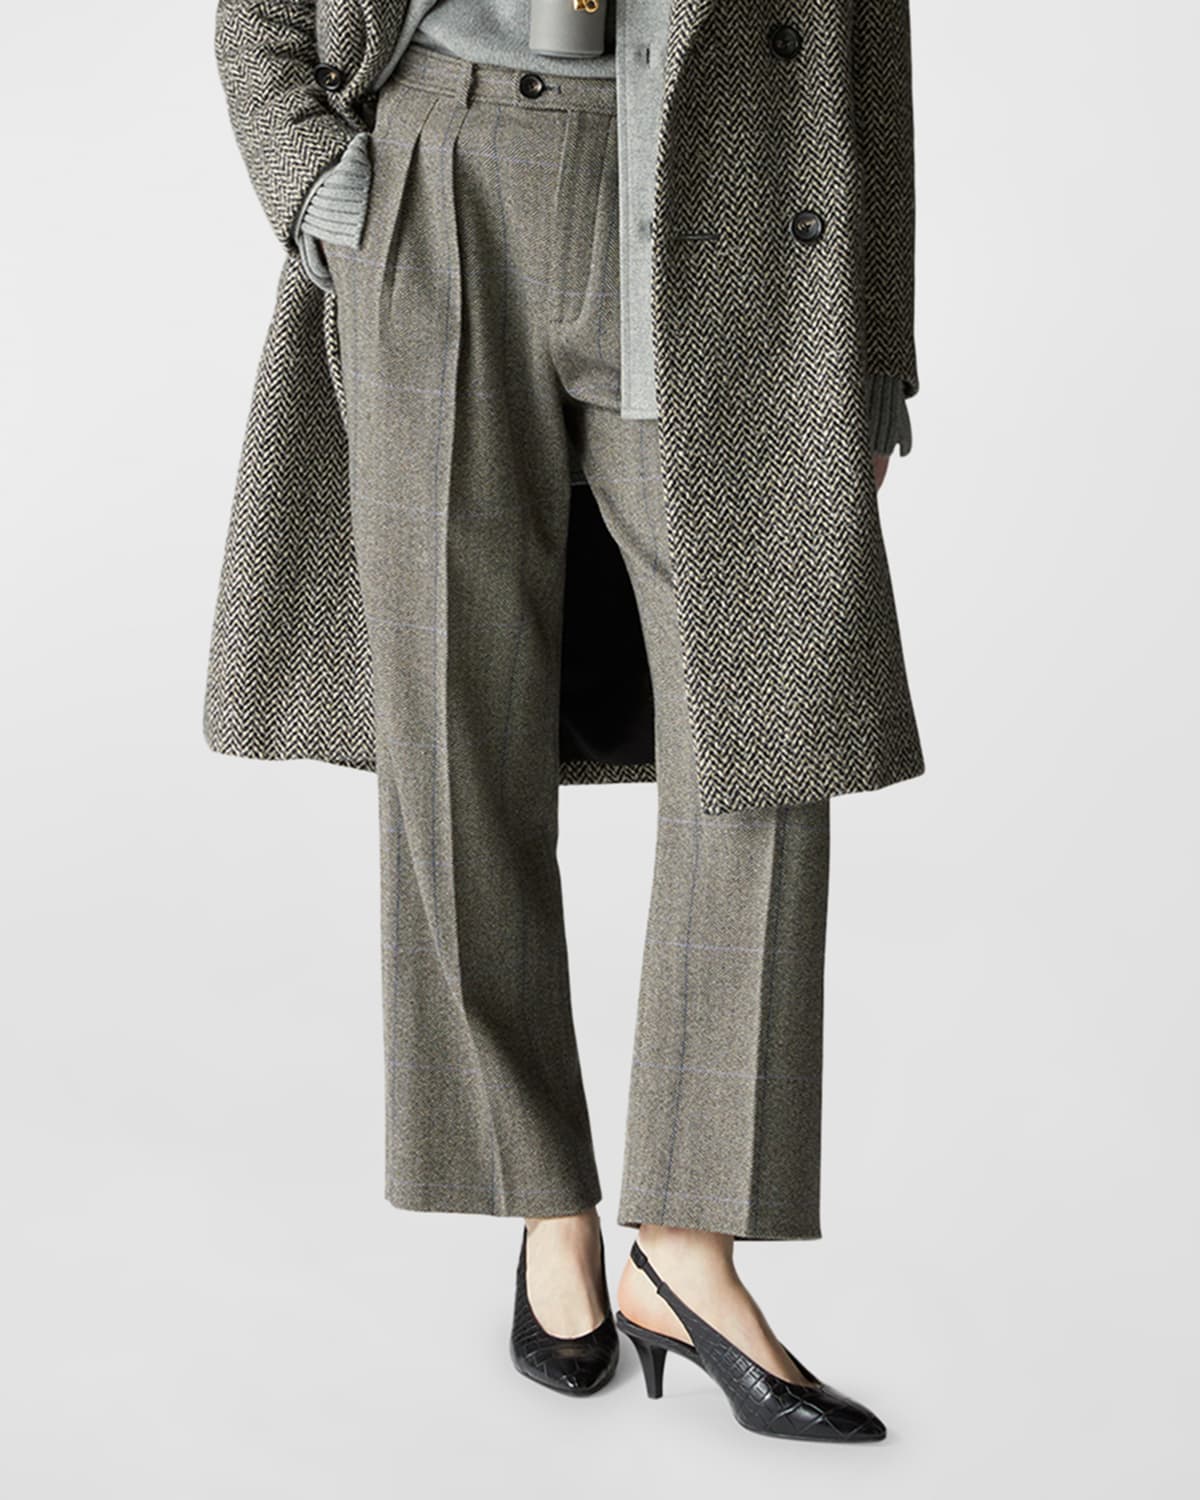 Loro Piana Yurik Cheviot Cashmere Overcheck Trousers In F4tp Grey Melblue